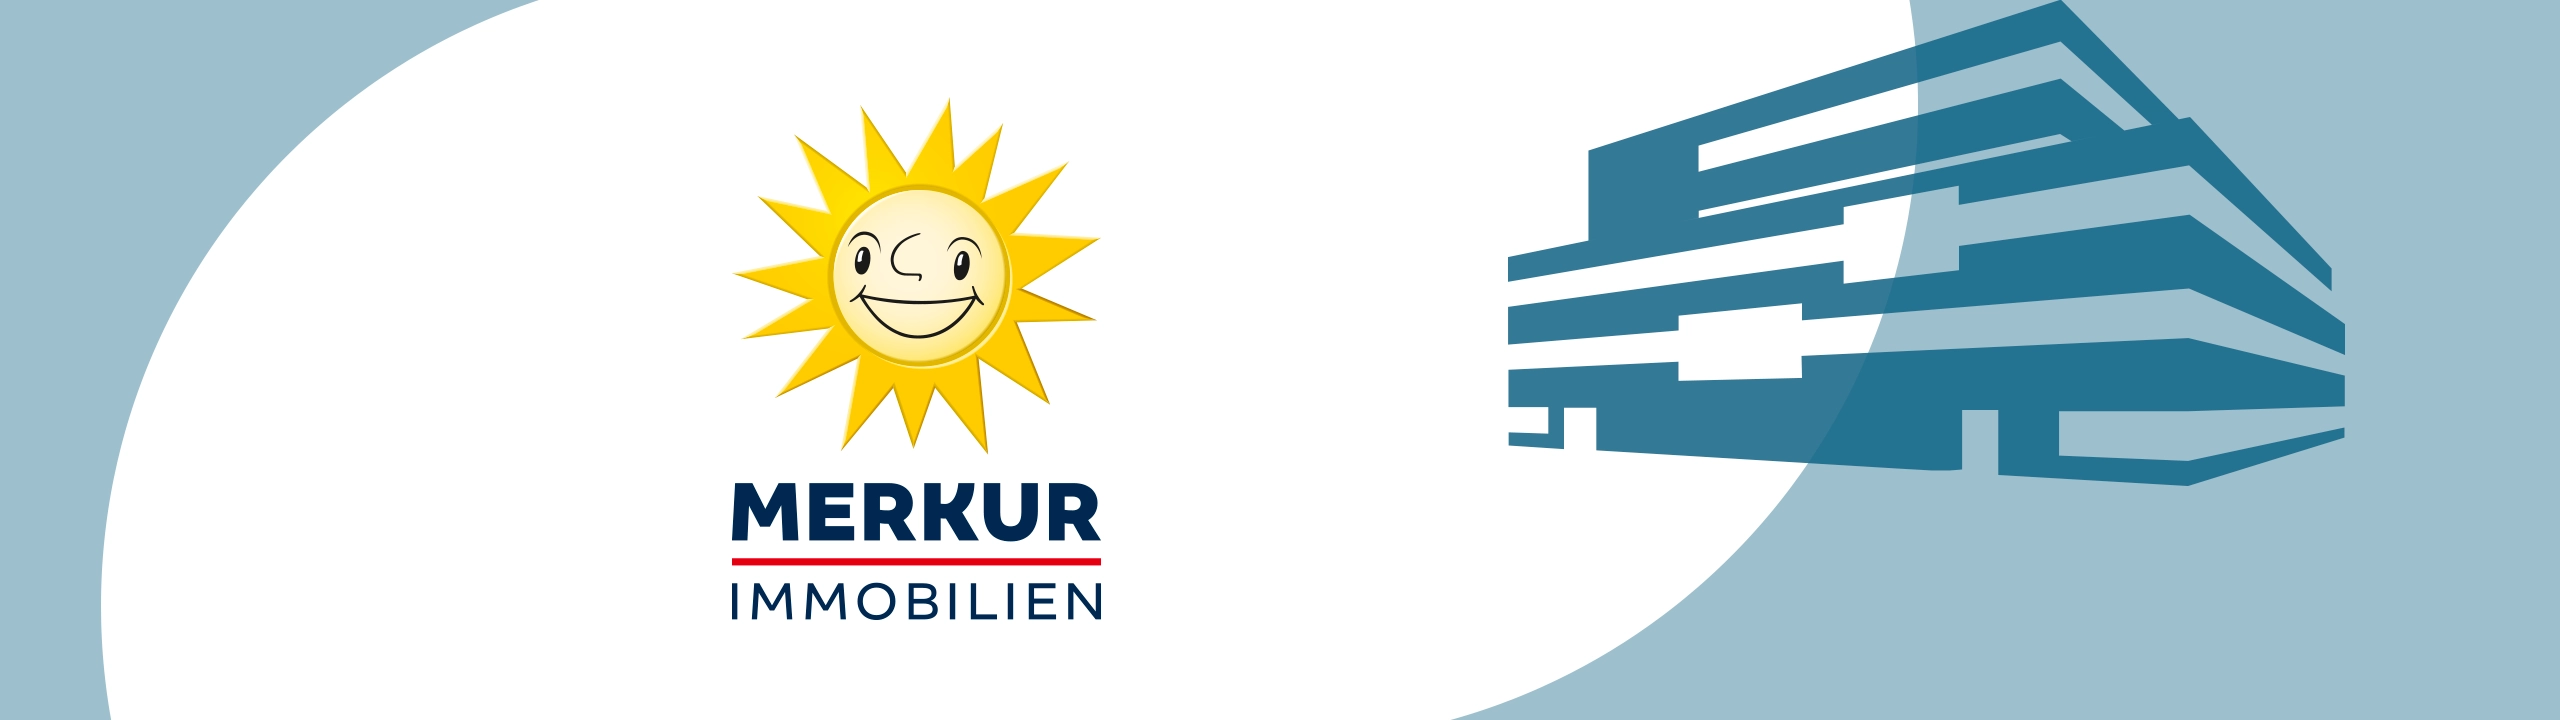 Merkur Immobilien Logo © Gauselmann Group